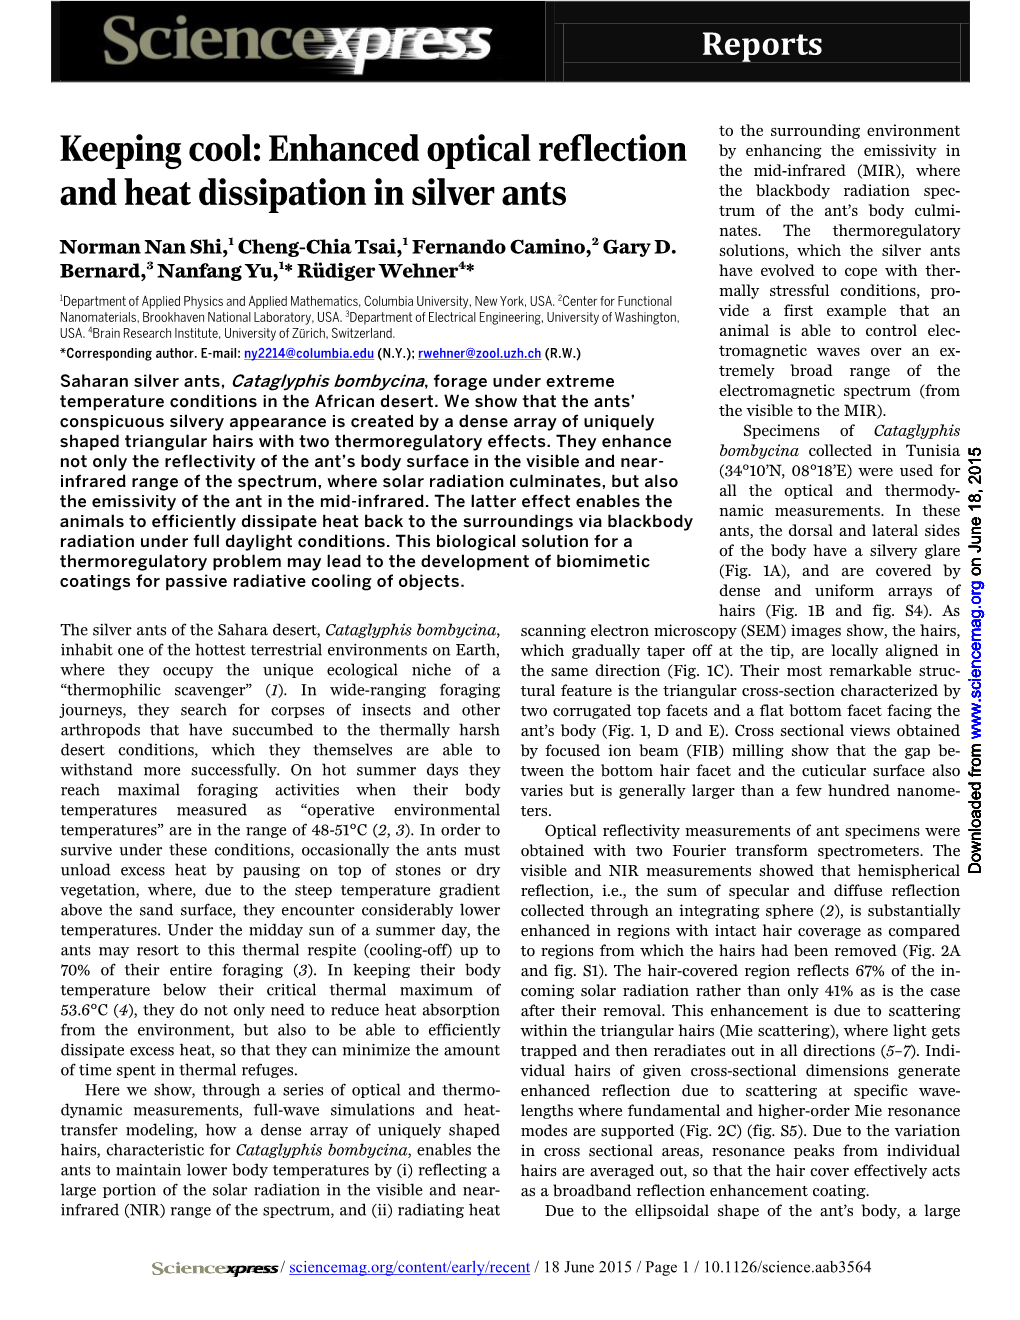 Enhanced Optical Reflection and Heat Dissipation in Silver Ants Norman Nan Shi, Cheng-Chia Tsai, Fernando Camino, Gary D